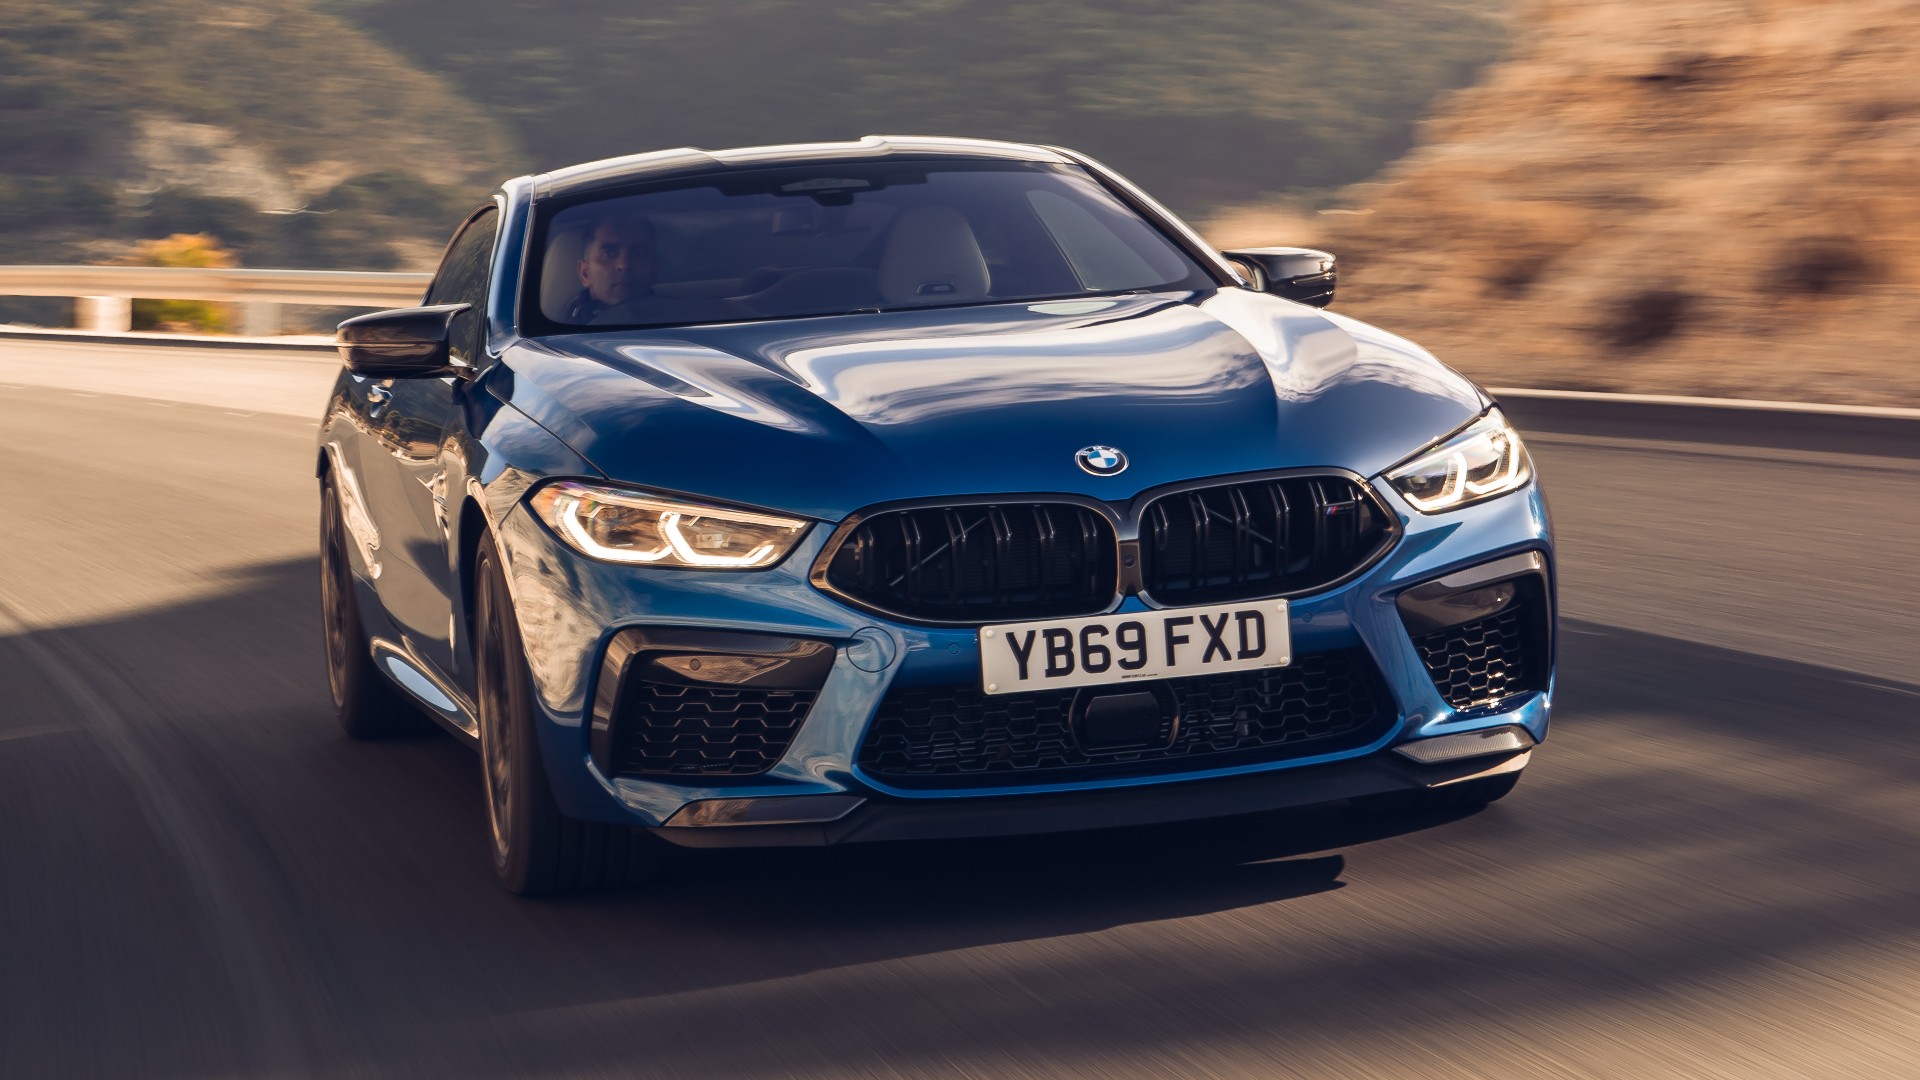 Η BMW υπόσχεται ακόμα περισσότερη δύναμη στα μελλοντικά μοντέλα Μ